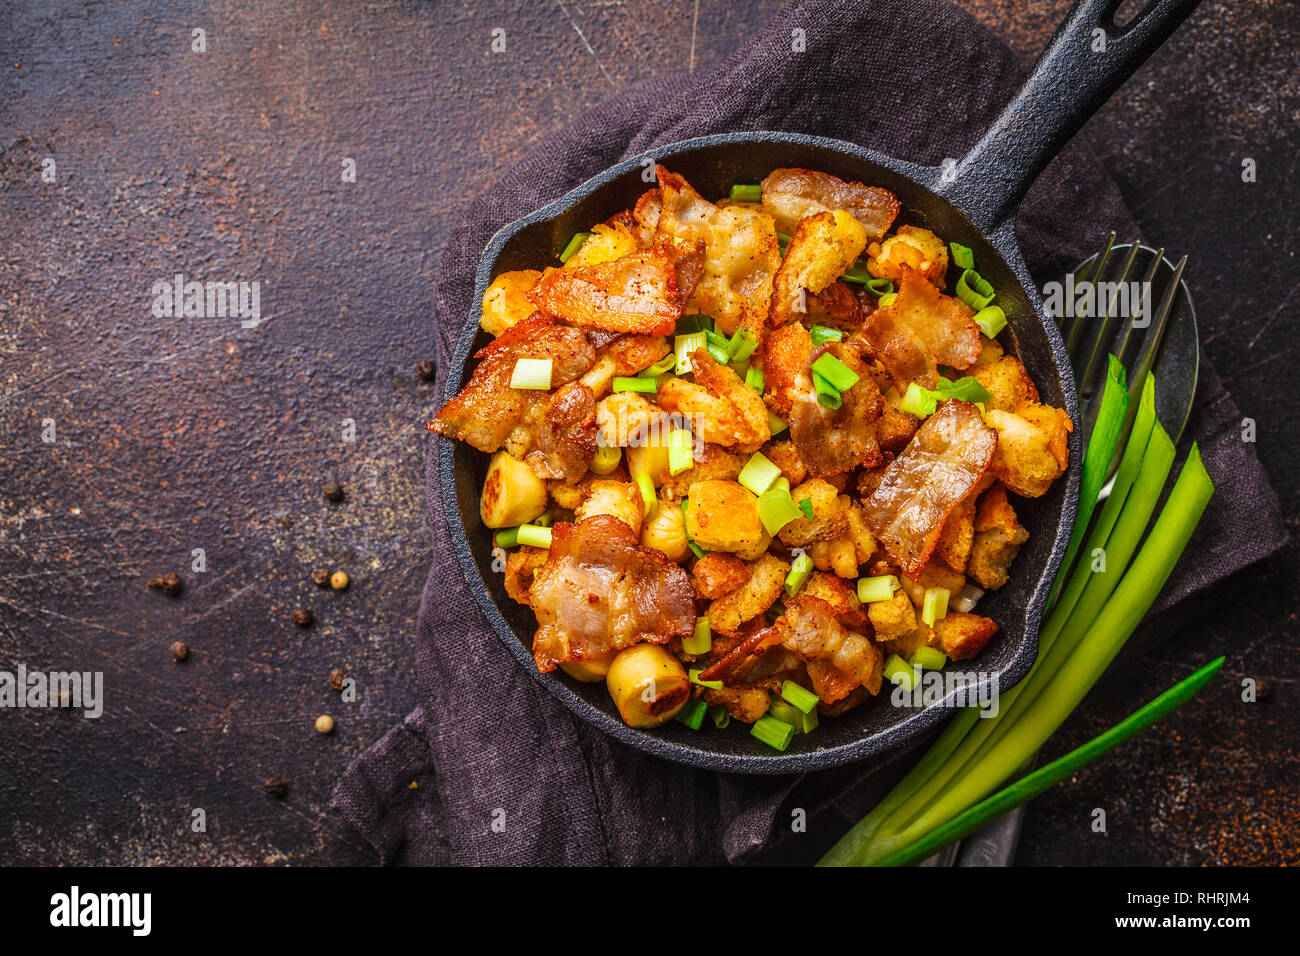 Spanisch migas mit Schweinefleisch und grüne Zwiebeln in einer gusseisernen  Pfanne auf einem dunklen Hintergrund Stockfotografie - Alamy